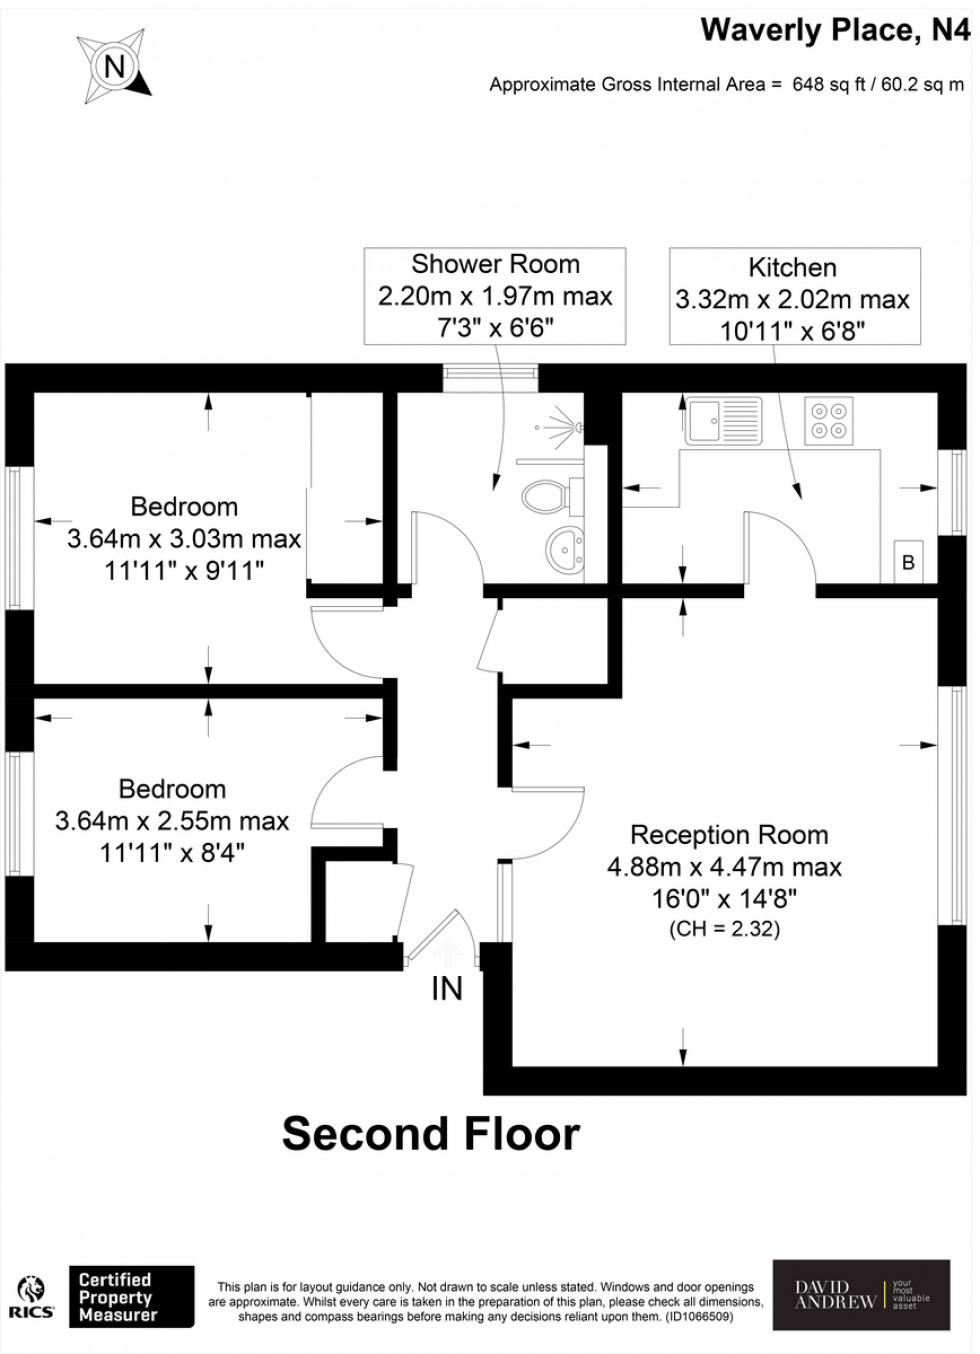 Floorplan for Waverly Place N4 2BU